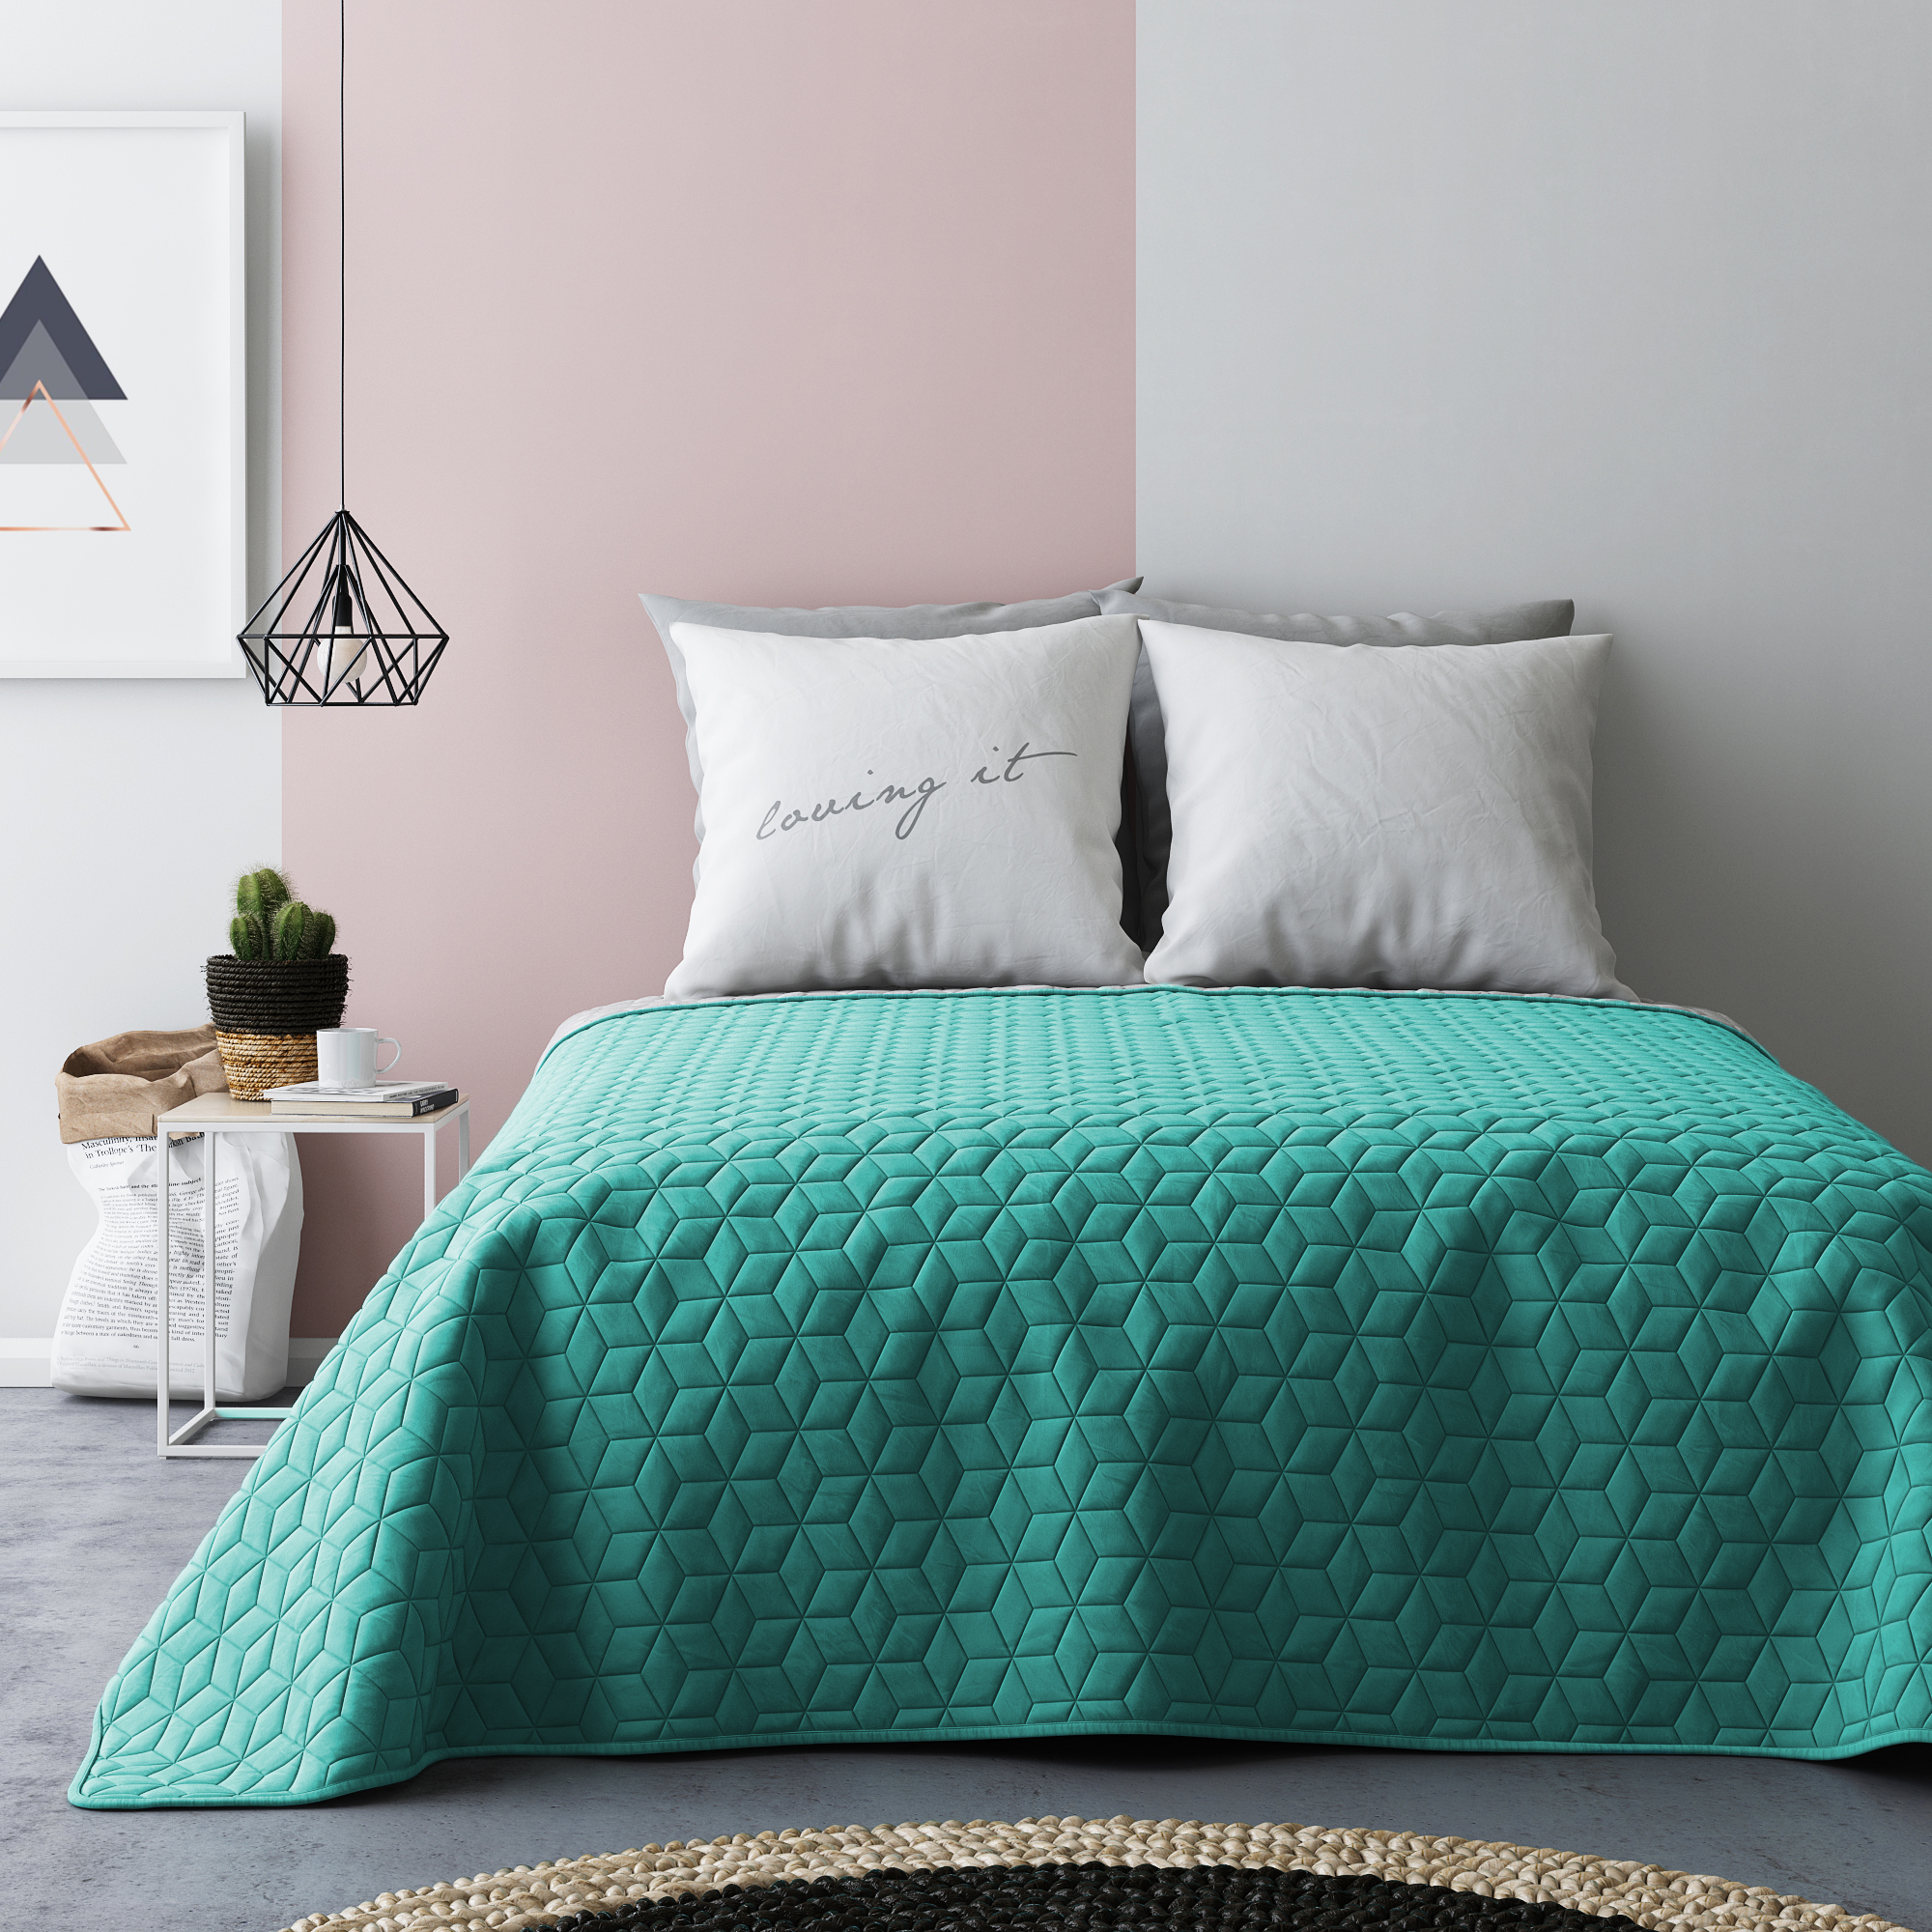 Narzuta francuska na łóżko w kolorze zielono szarym 